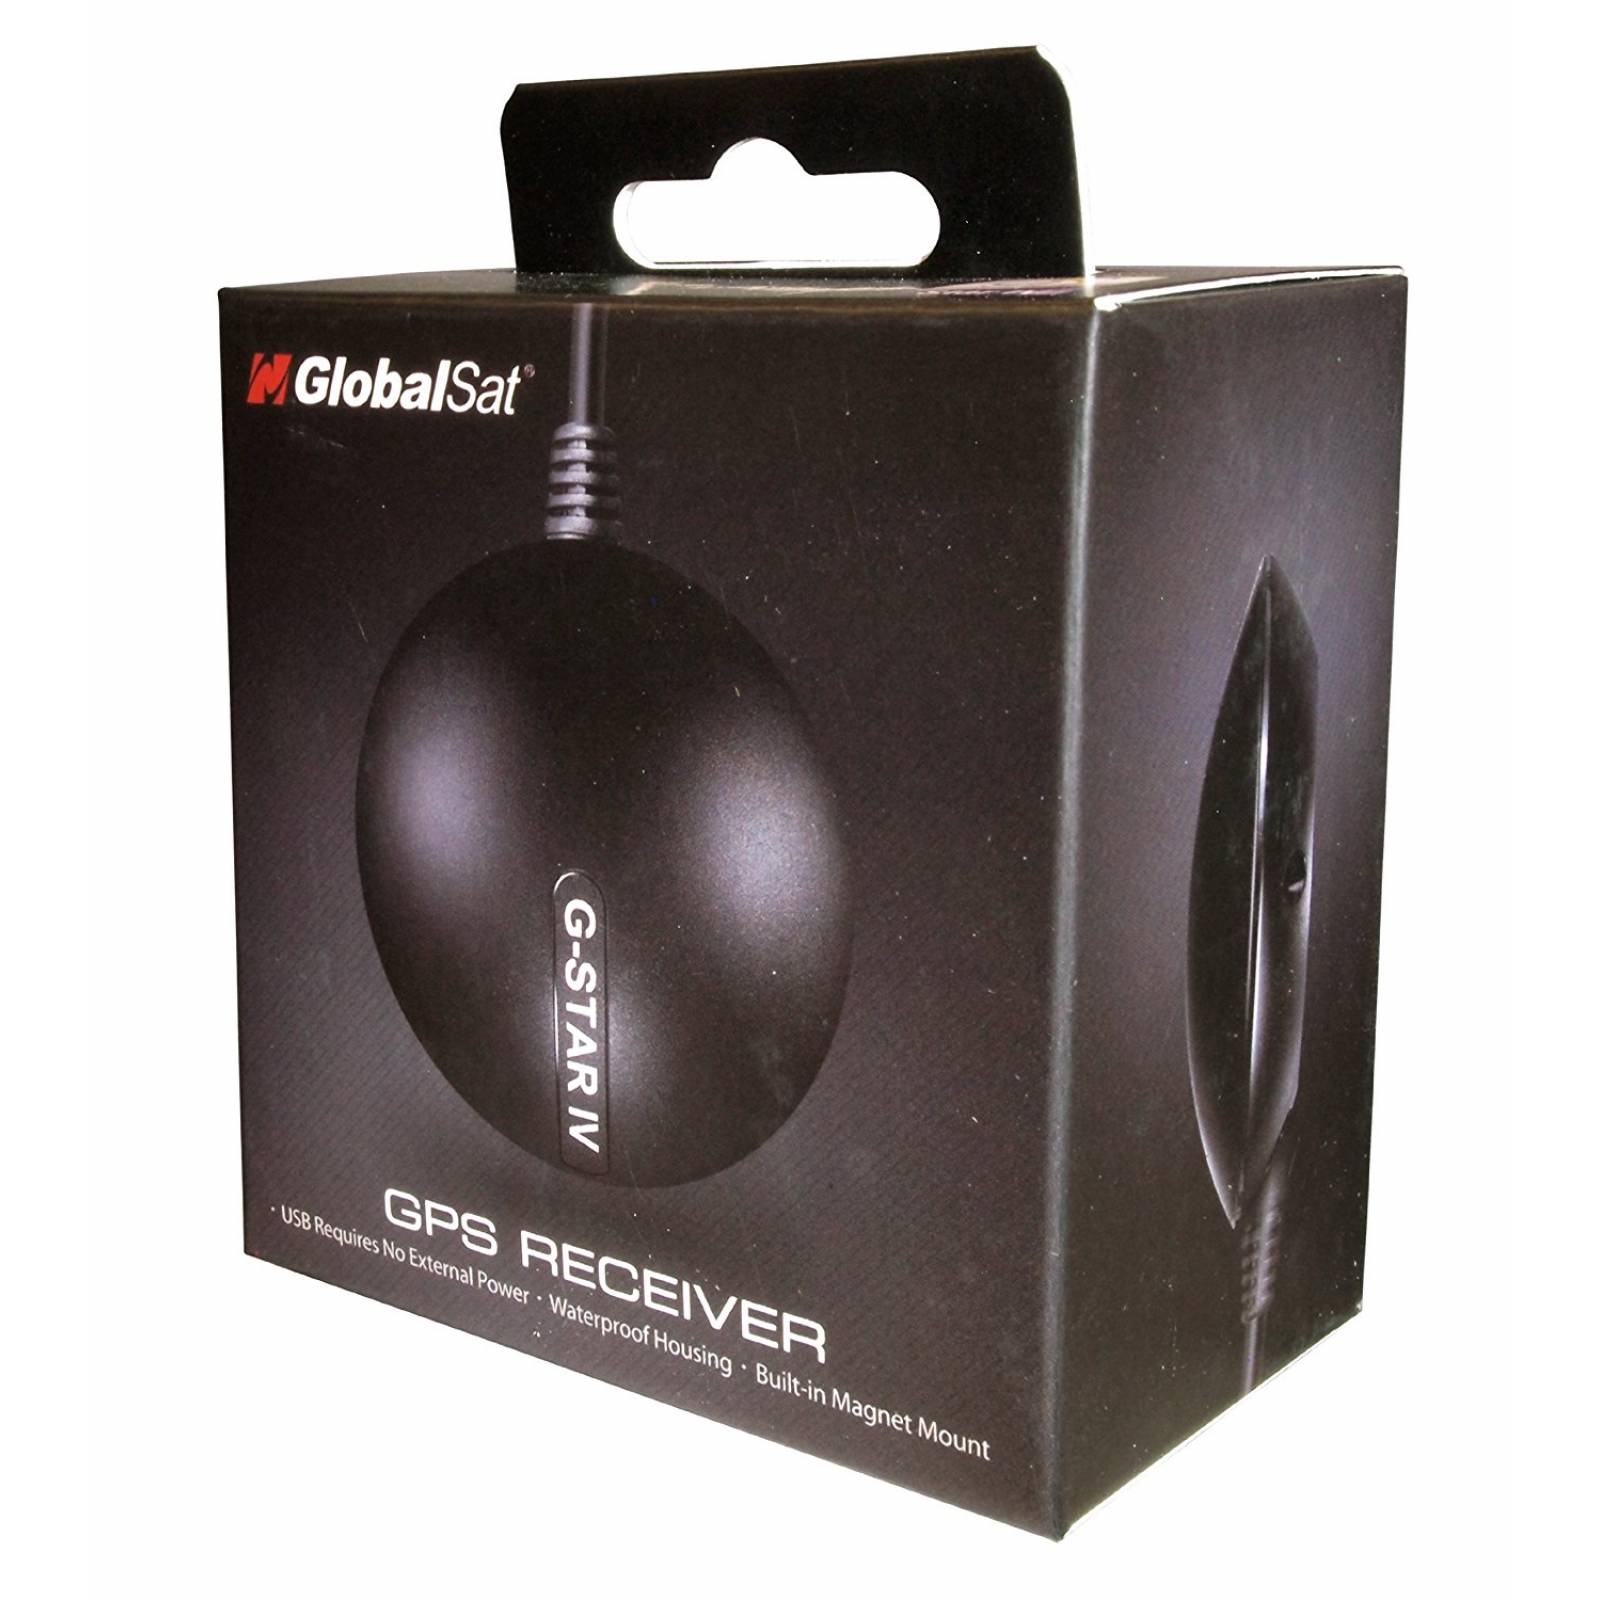 GlobalSat BU-353-S4 USB GPS receptor negro -Negro